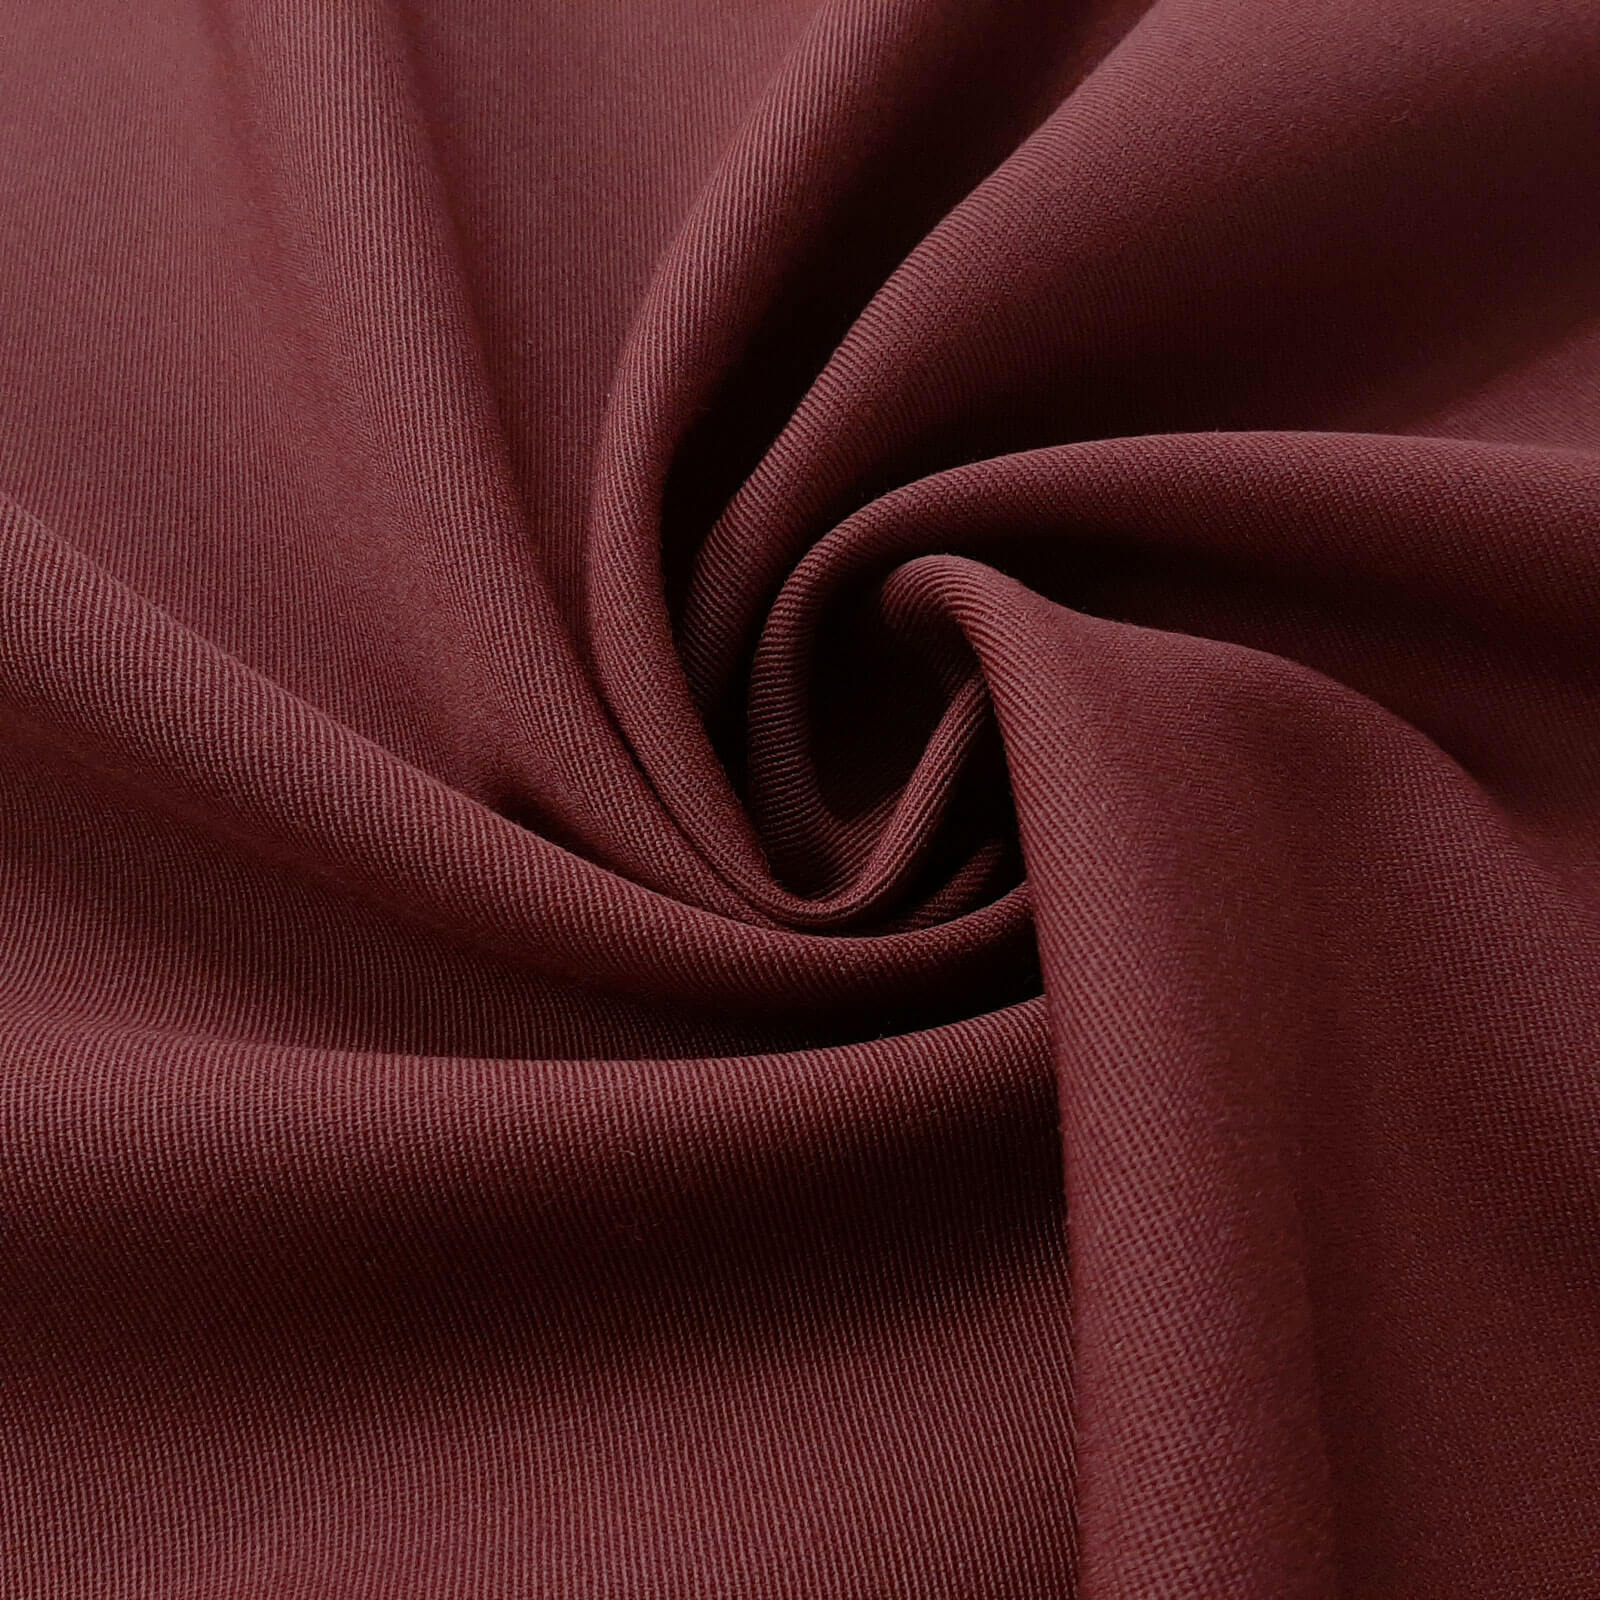 Franziska - Woolen cloth / Uniform cloth - Bordeaux